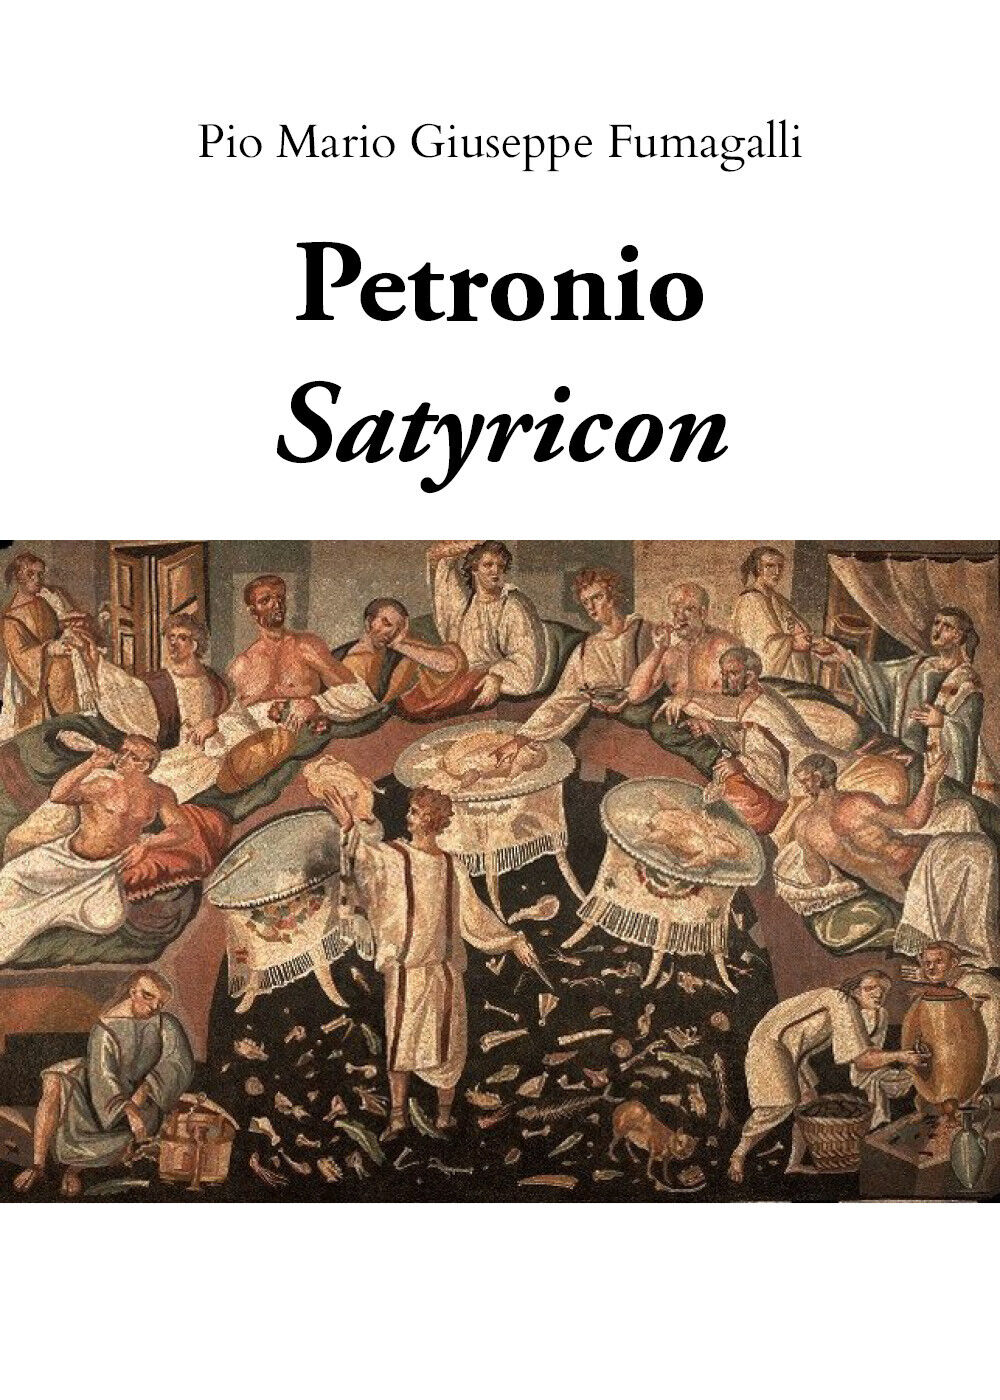 Petronio, Satyricon,  2019,  Pio Mario Giuseppe Fumagalli